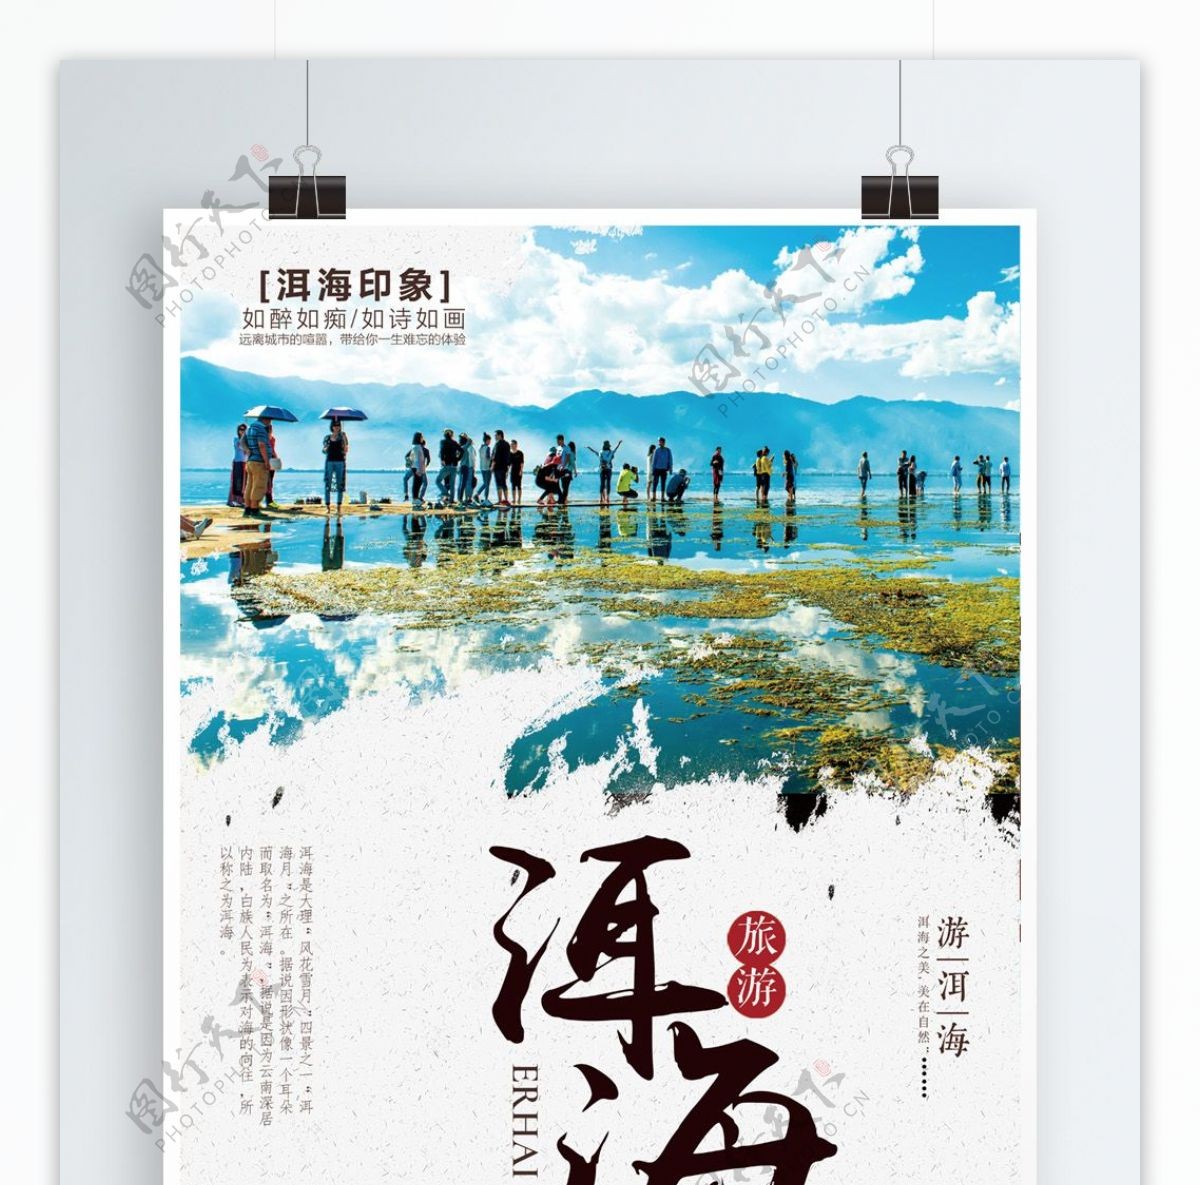 洱海旅游旅行社促销宣传海报